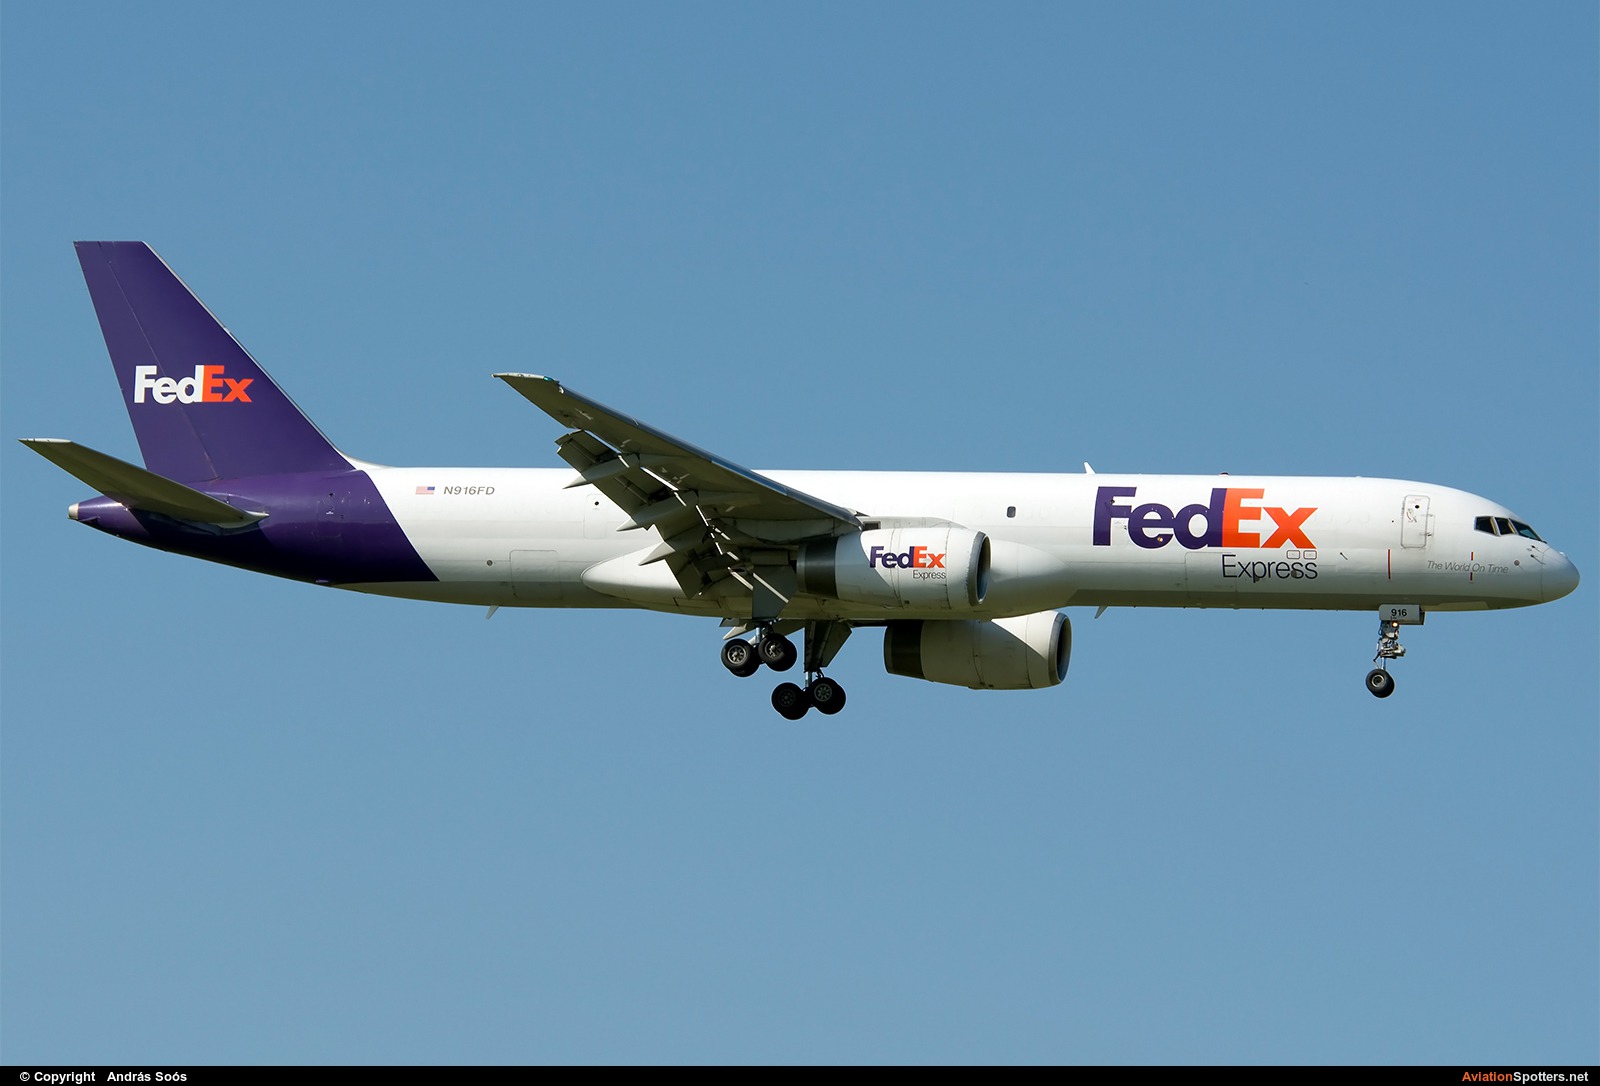 FedEx Federal Express  -  757-200F  (N916FD) By András Soós (sas1965)